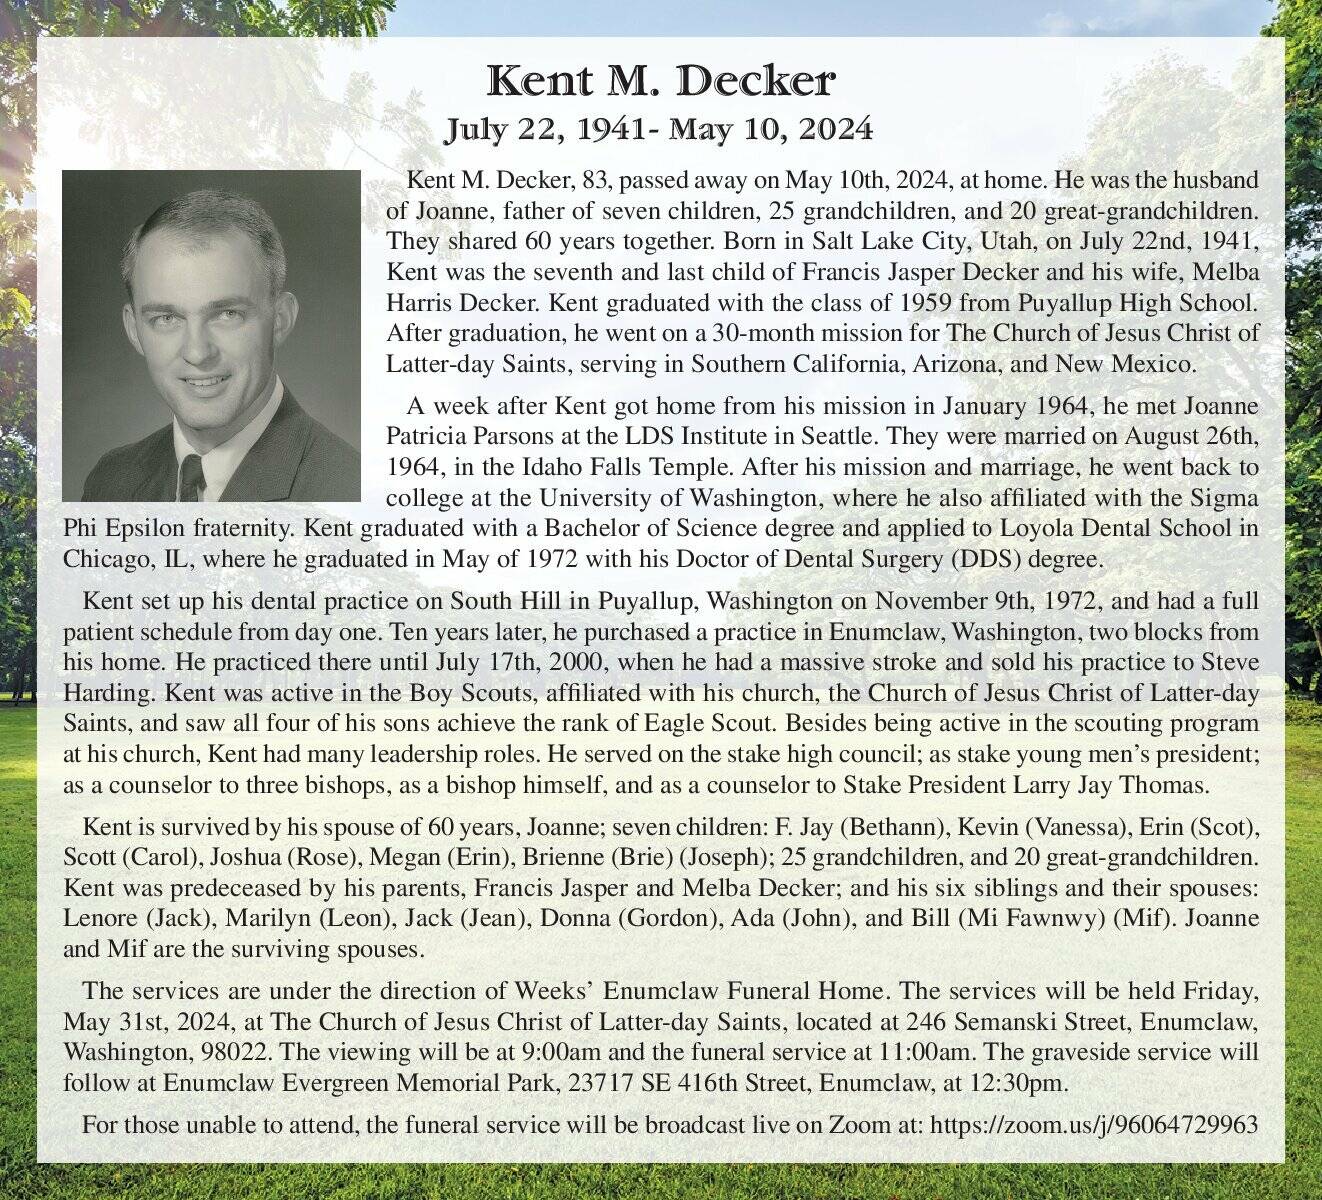 Kent Decker